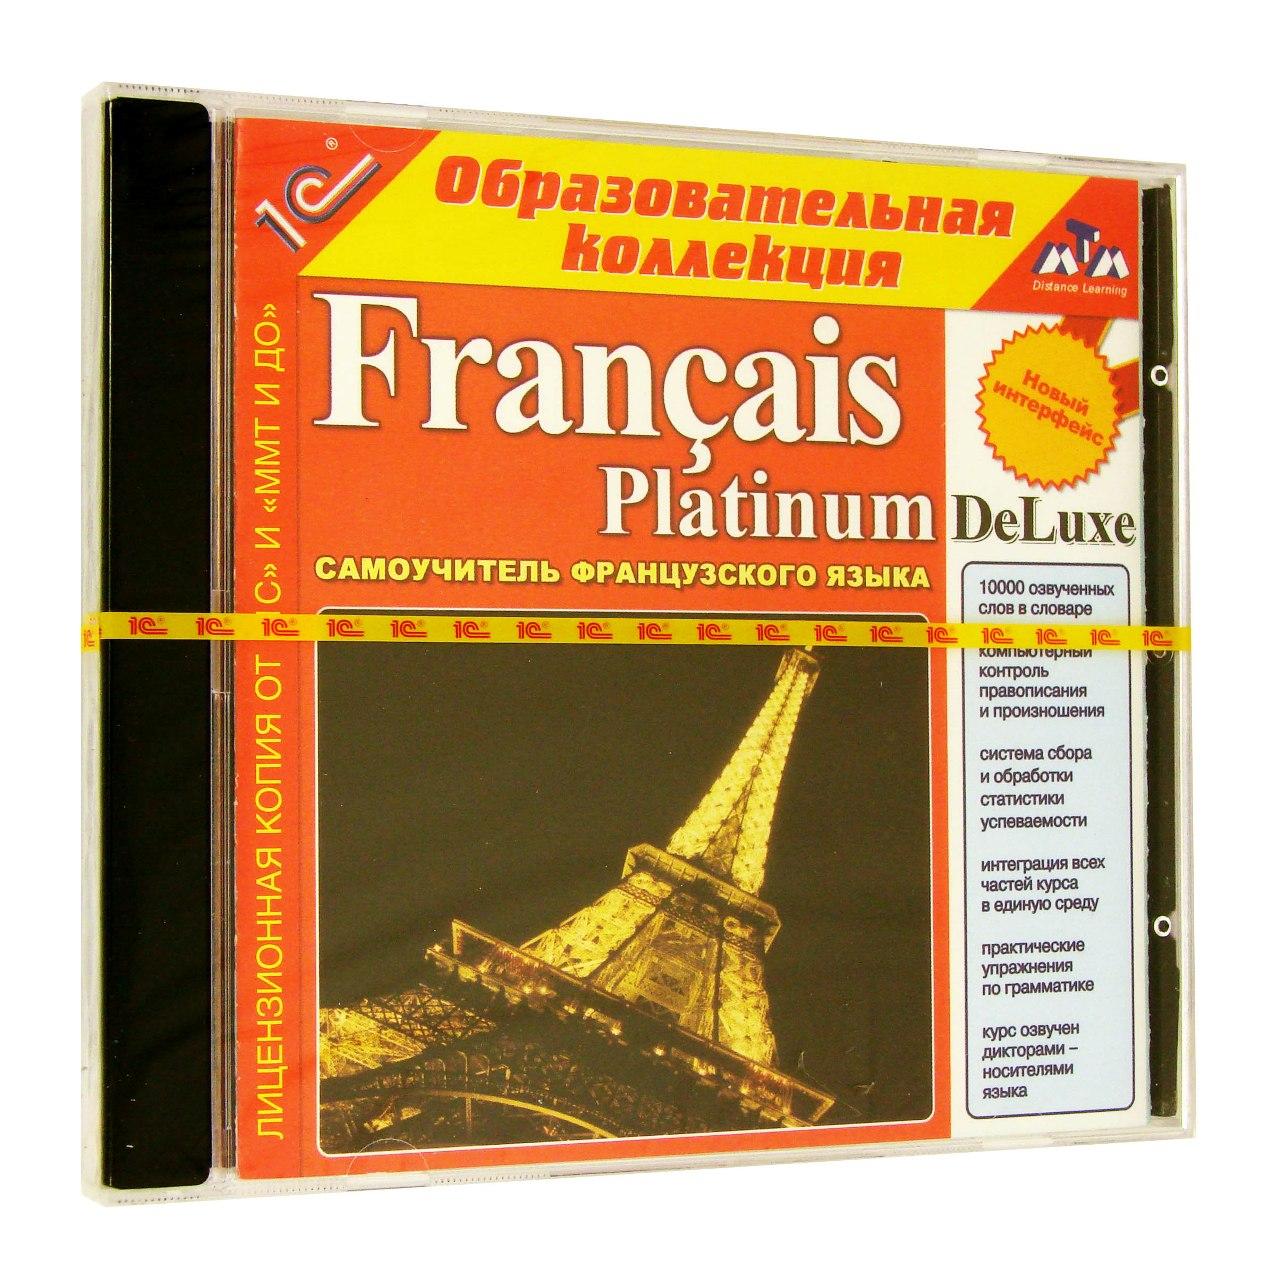 Компьютерный компакт-диск Francais Platinum Deluxe (PC), фирма "1С", 1CD